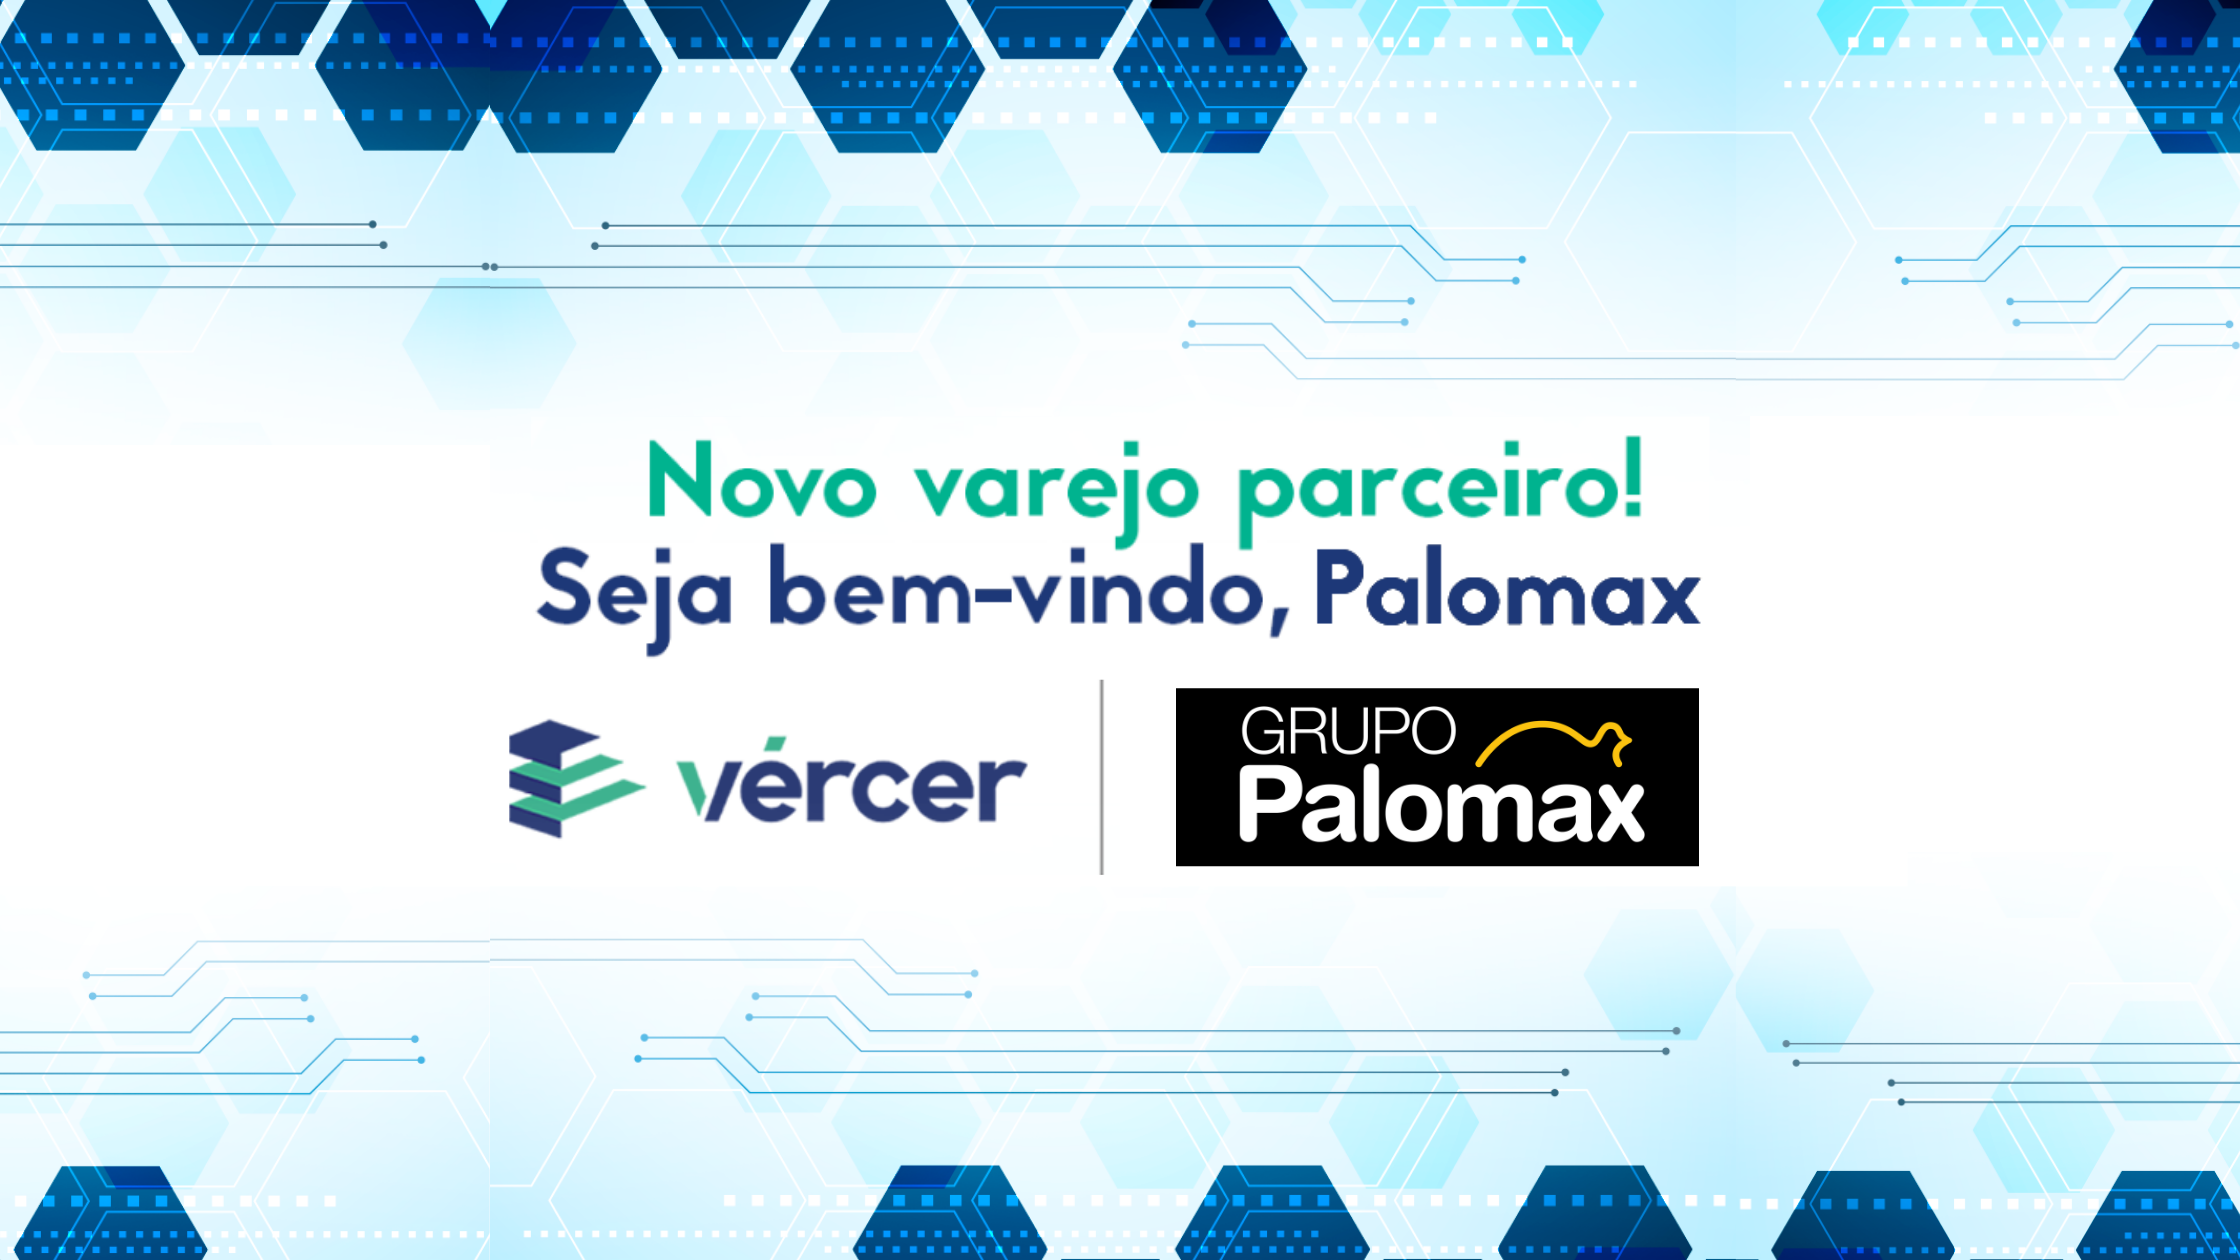 O Supermercado Palomax é o mais novo parceiro da Vércer!